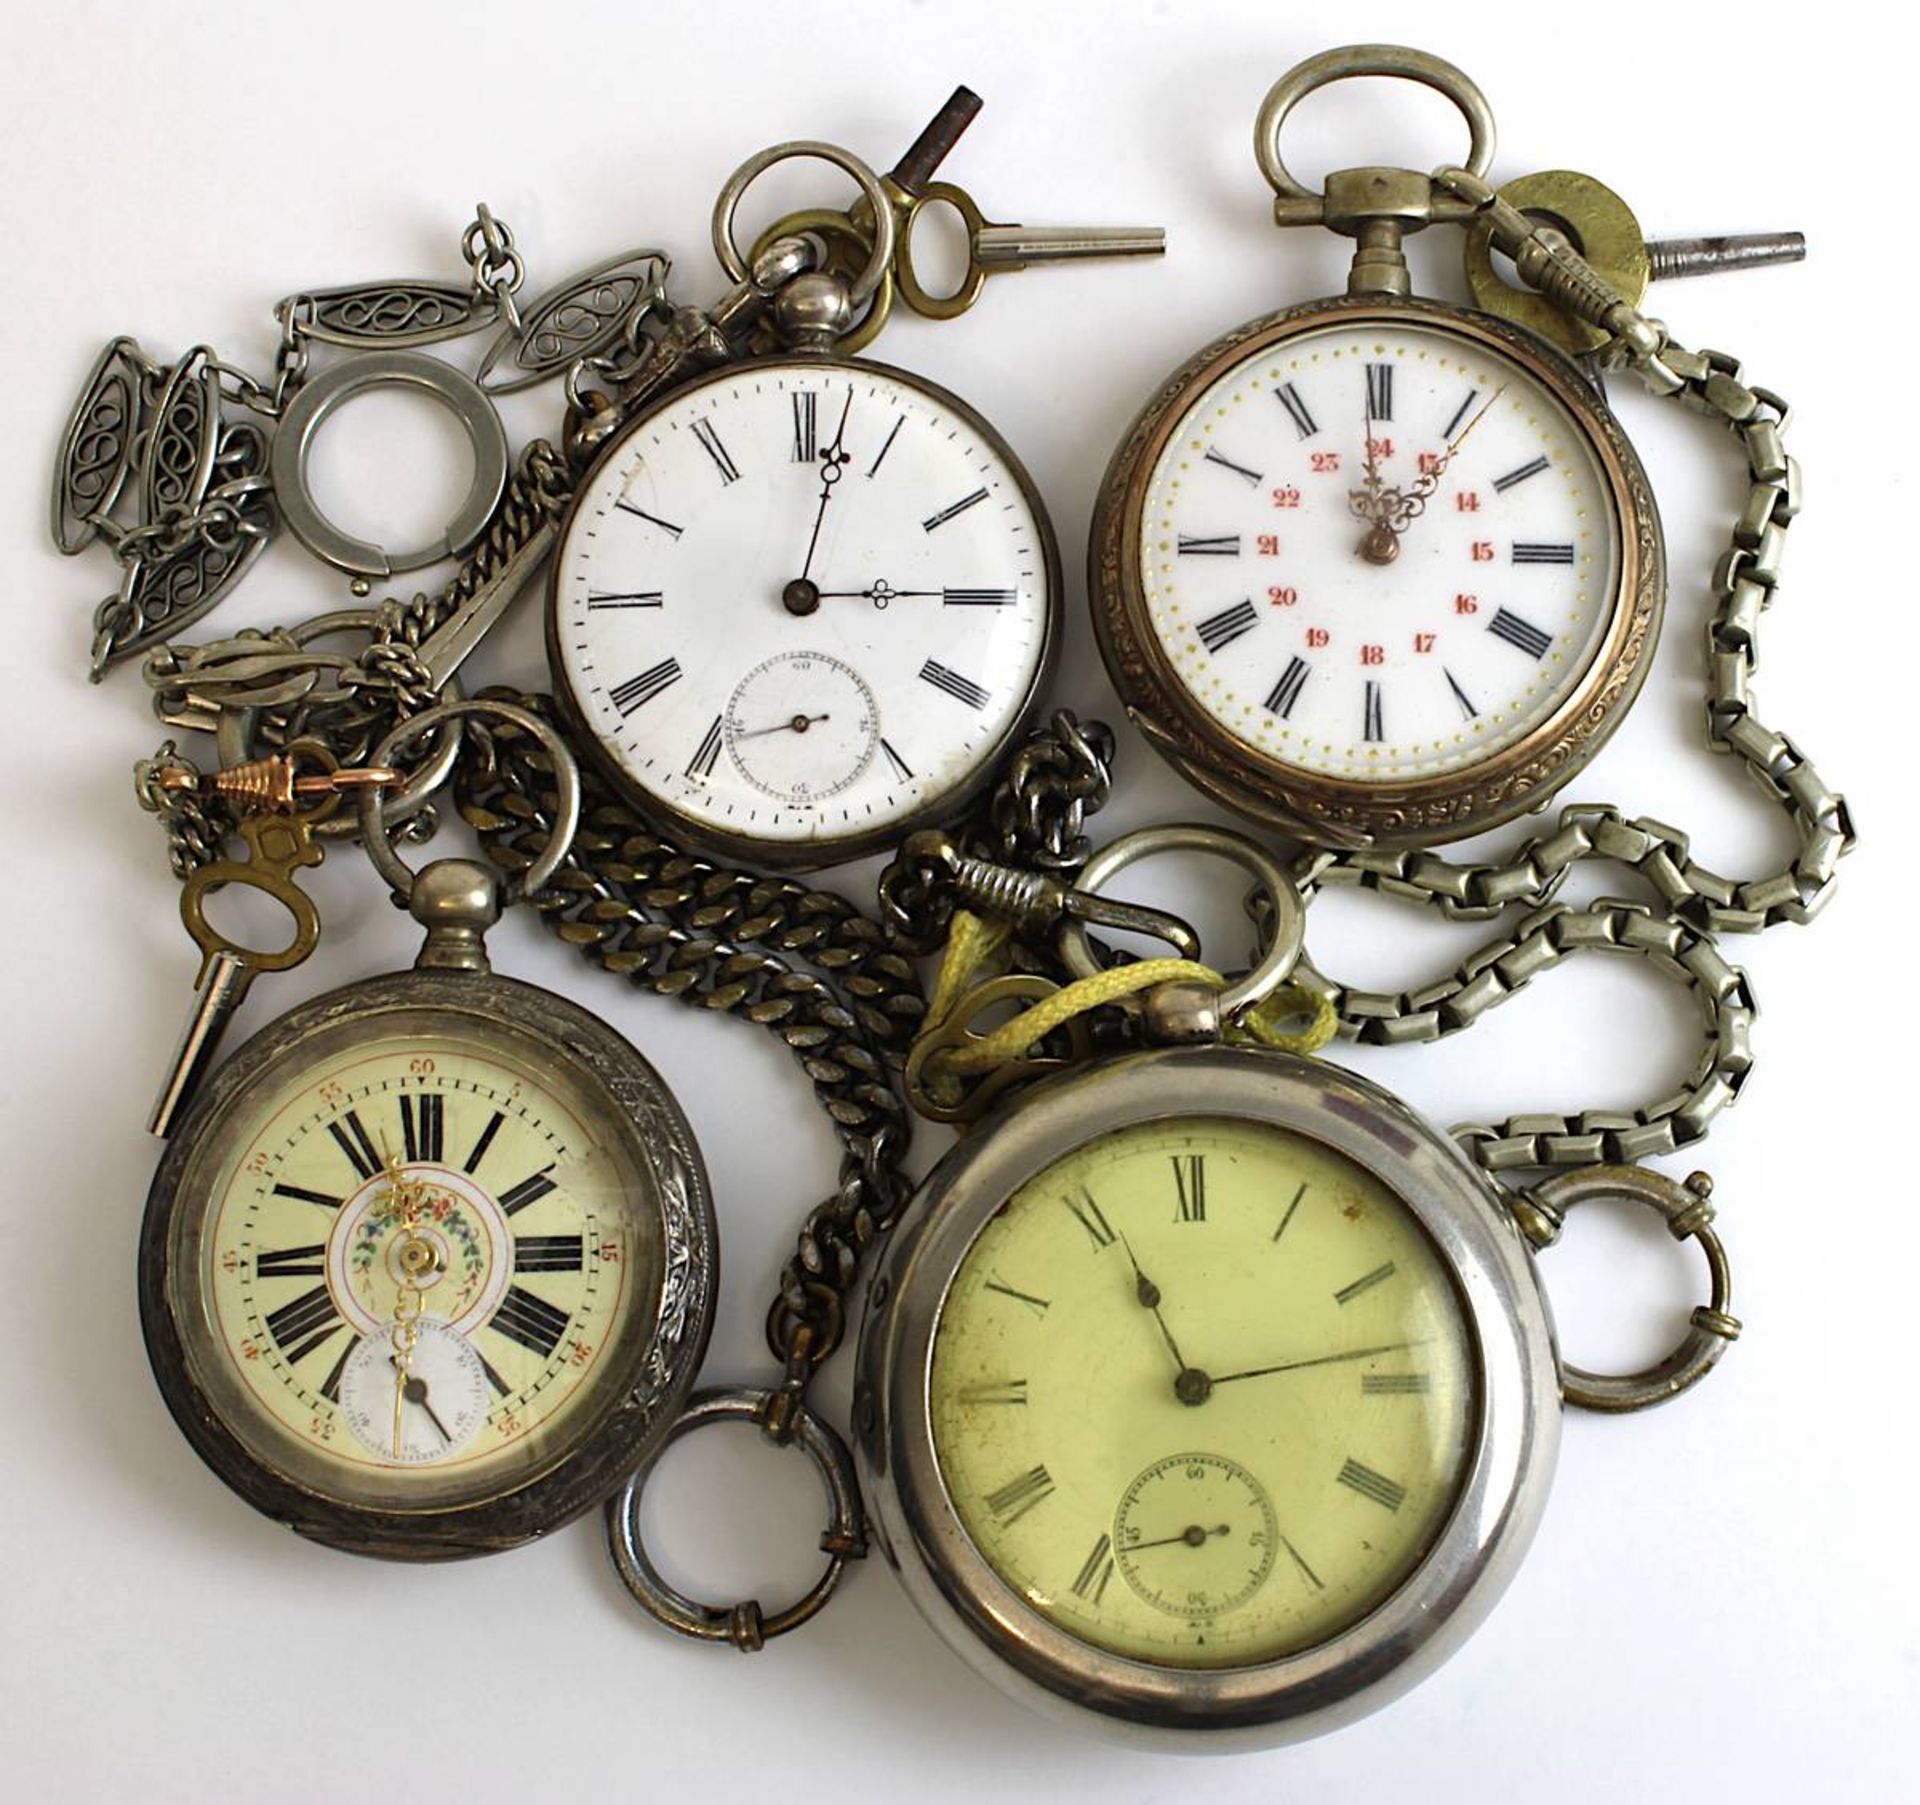 Vier Taschenuhren mit Schlüsselaufzug, Ende 19. Jh., Gehäuse teils Silber, teils versilbert, eine